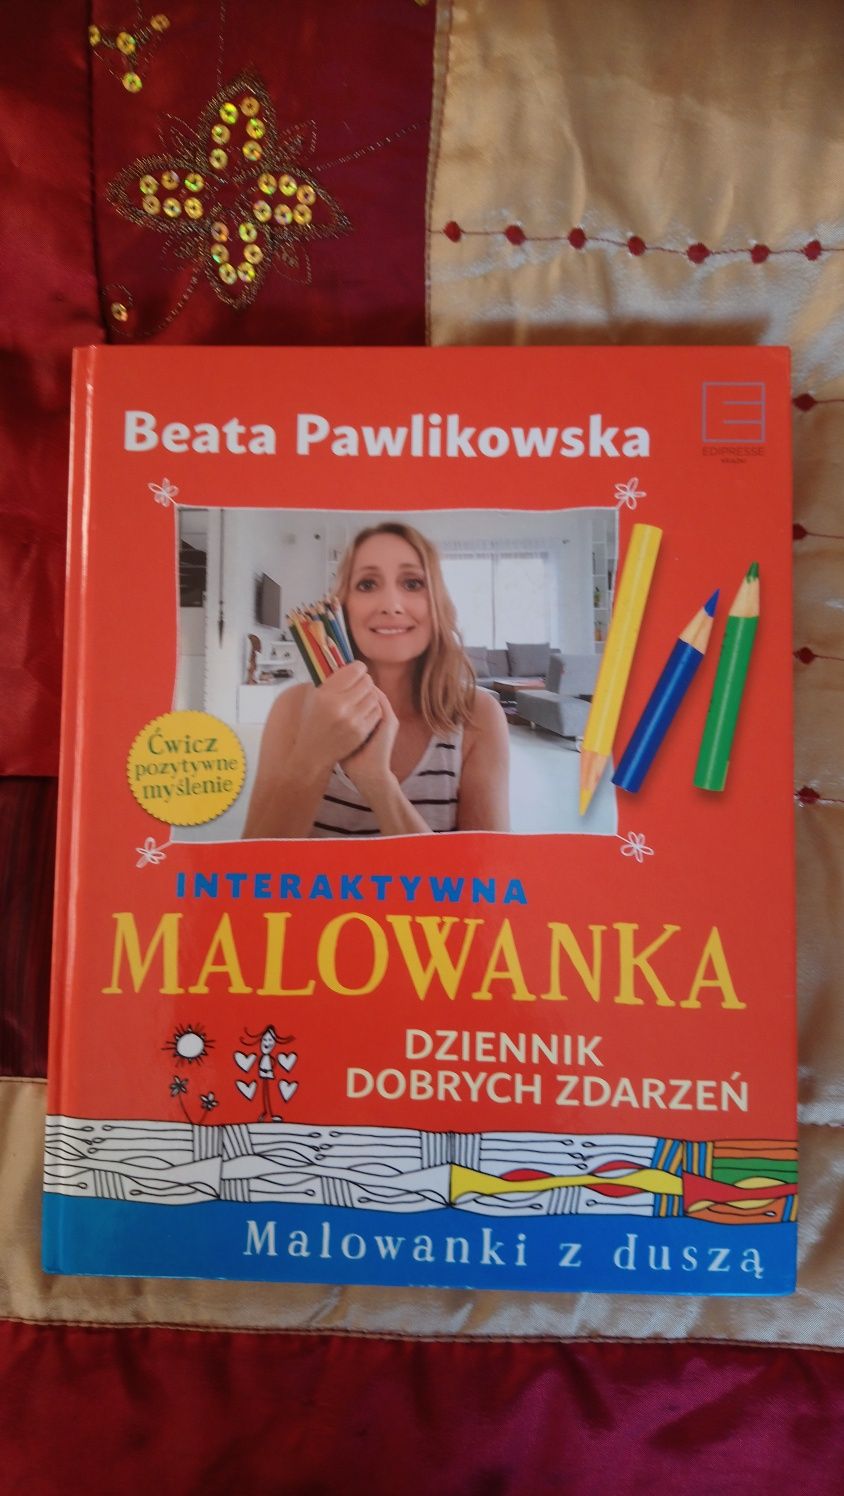 Interaktywna malowanka Dziennik dobrych zdarzeń Beata Pawlikowska